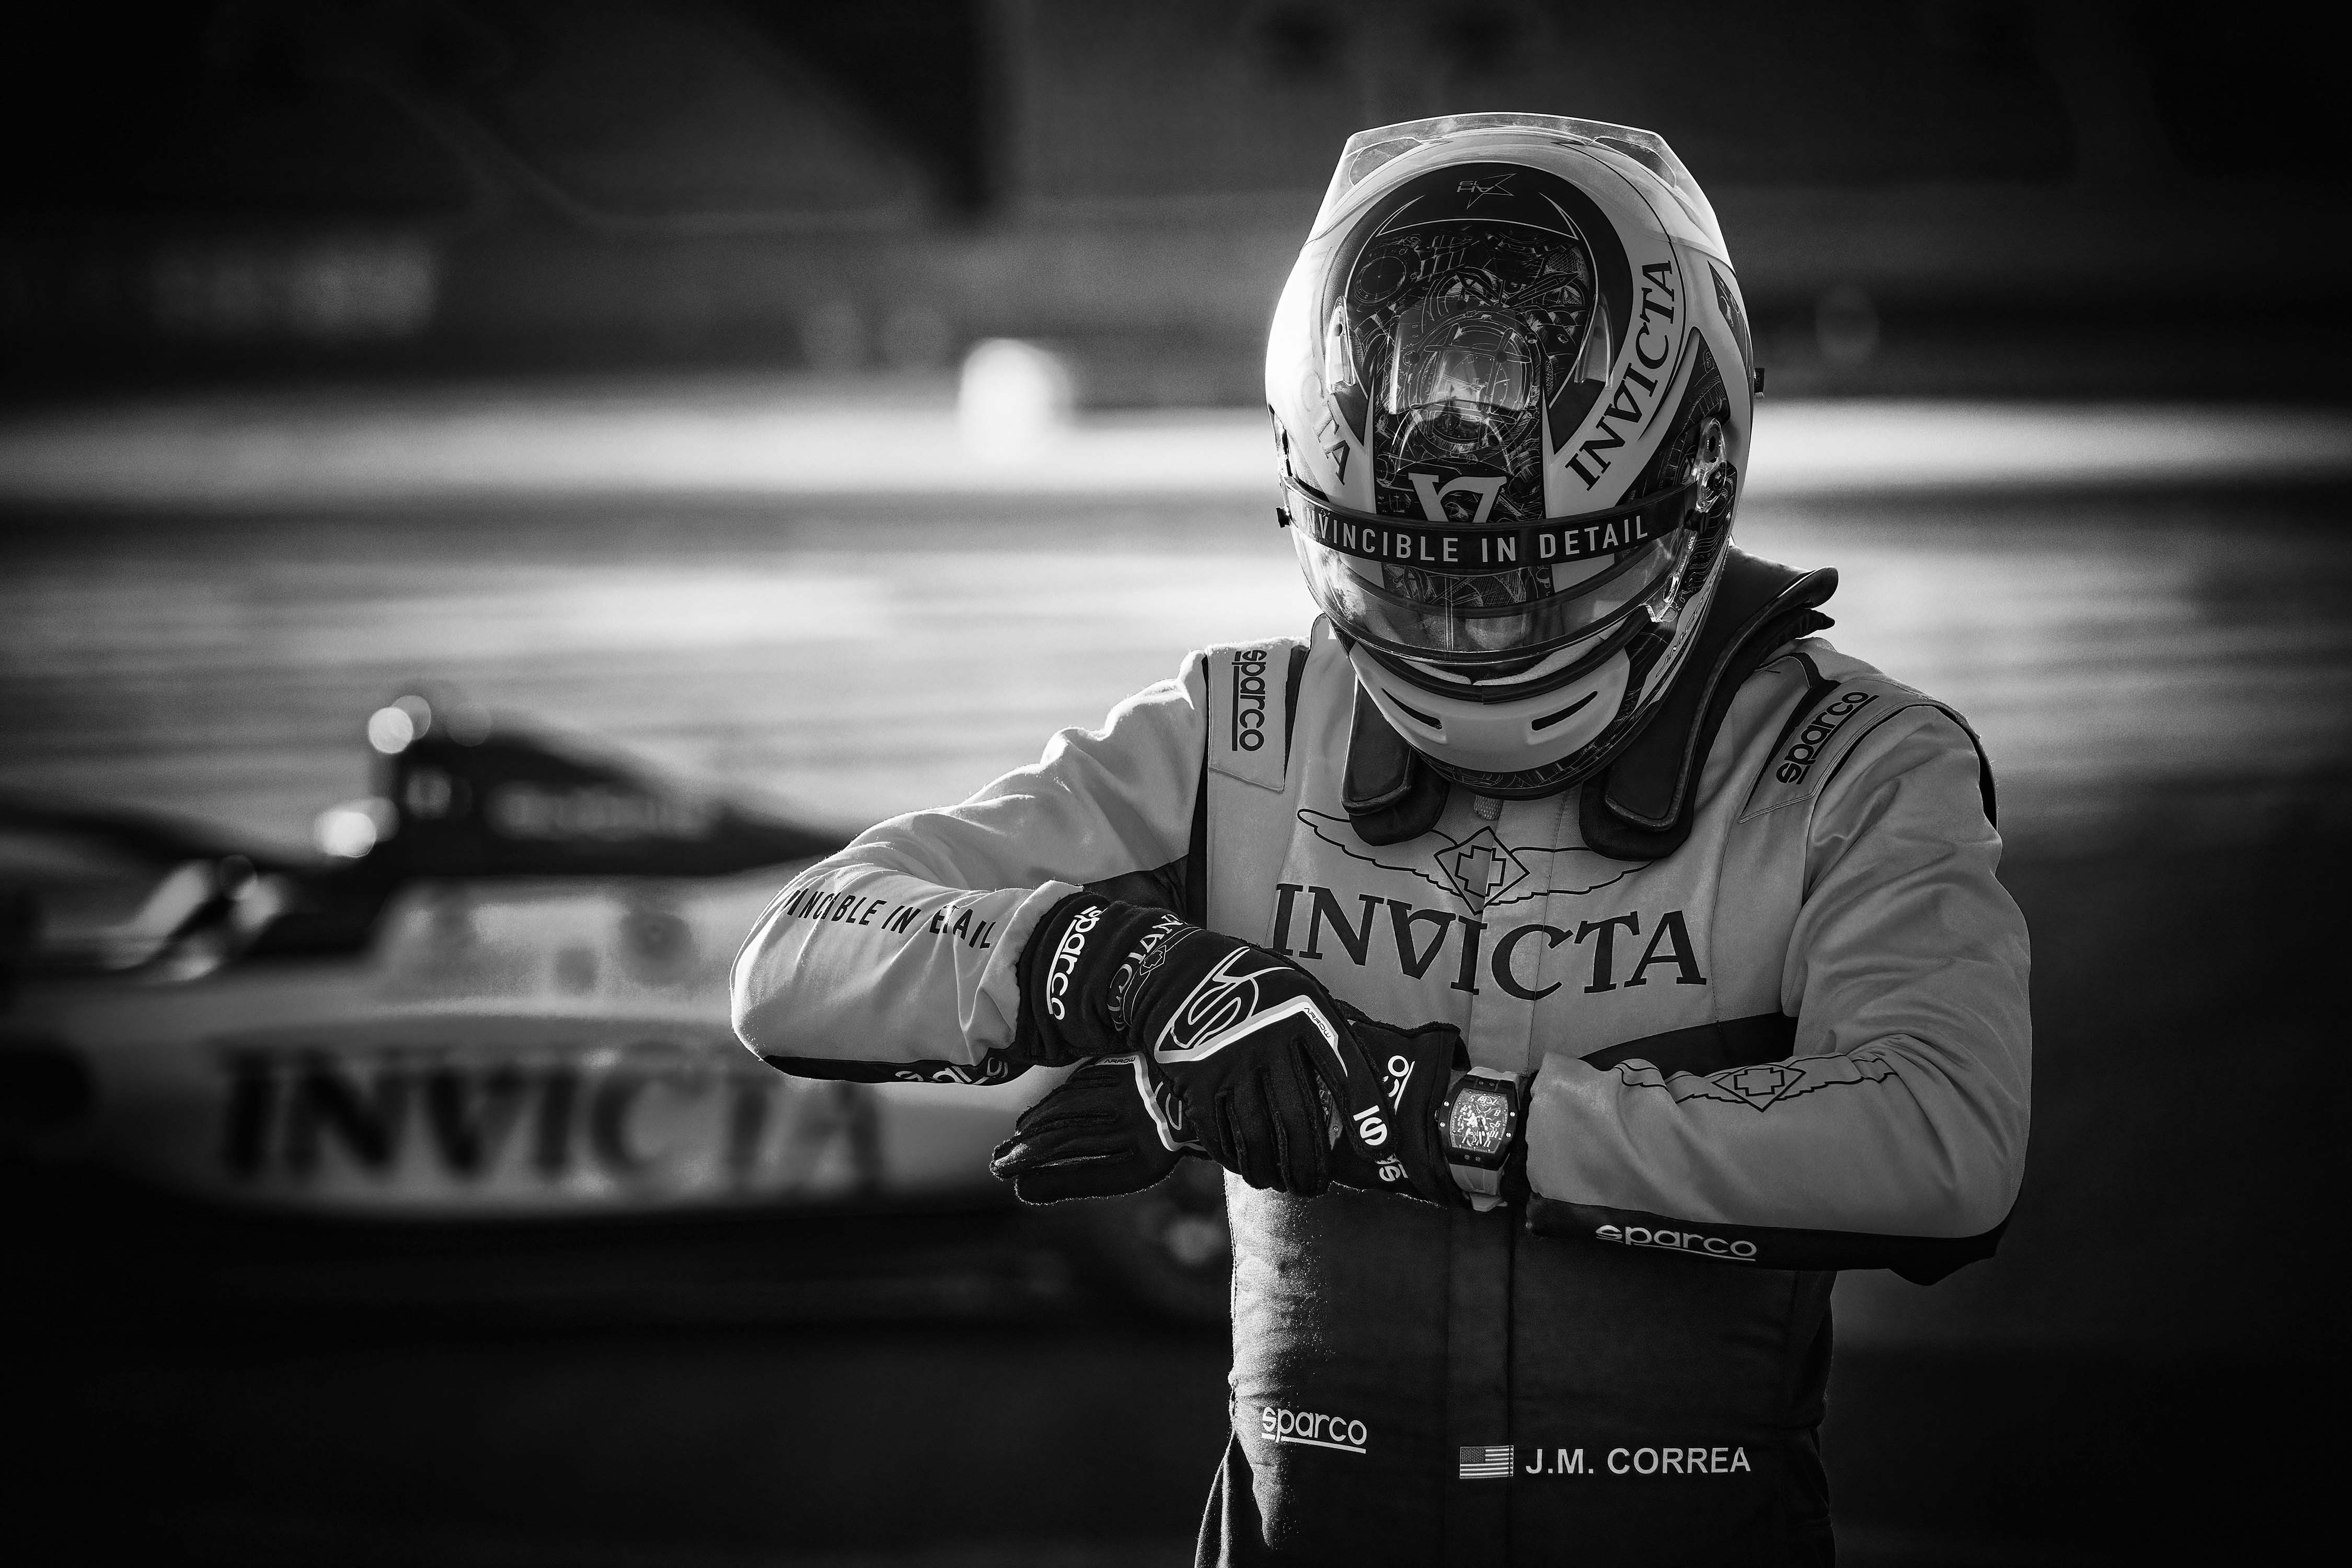 Juan Manuel Correa in racekleding en met racewagen Invicta